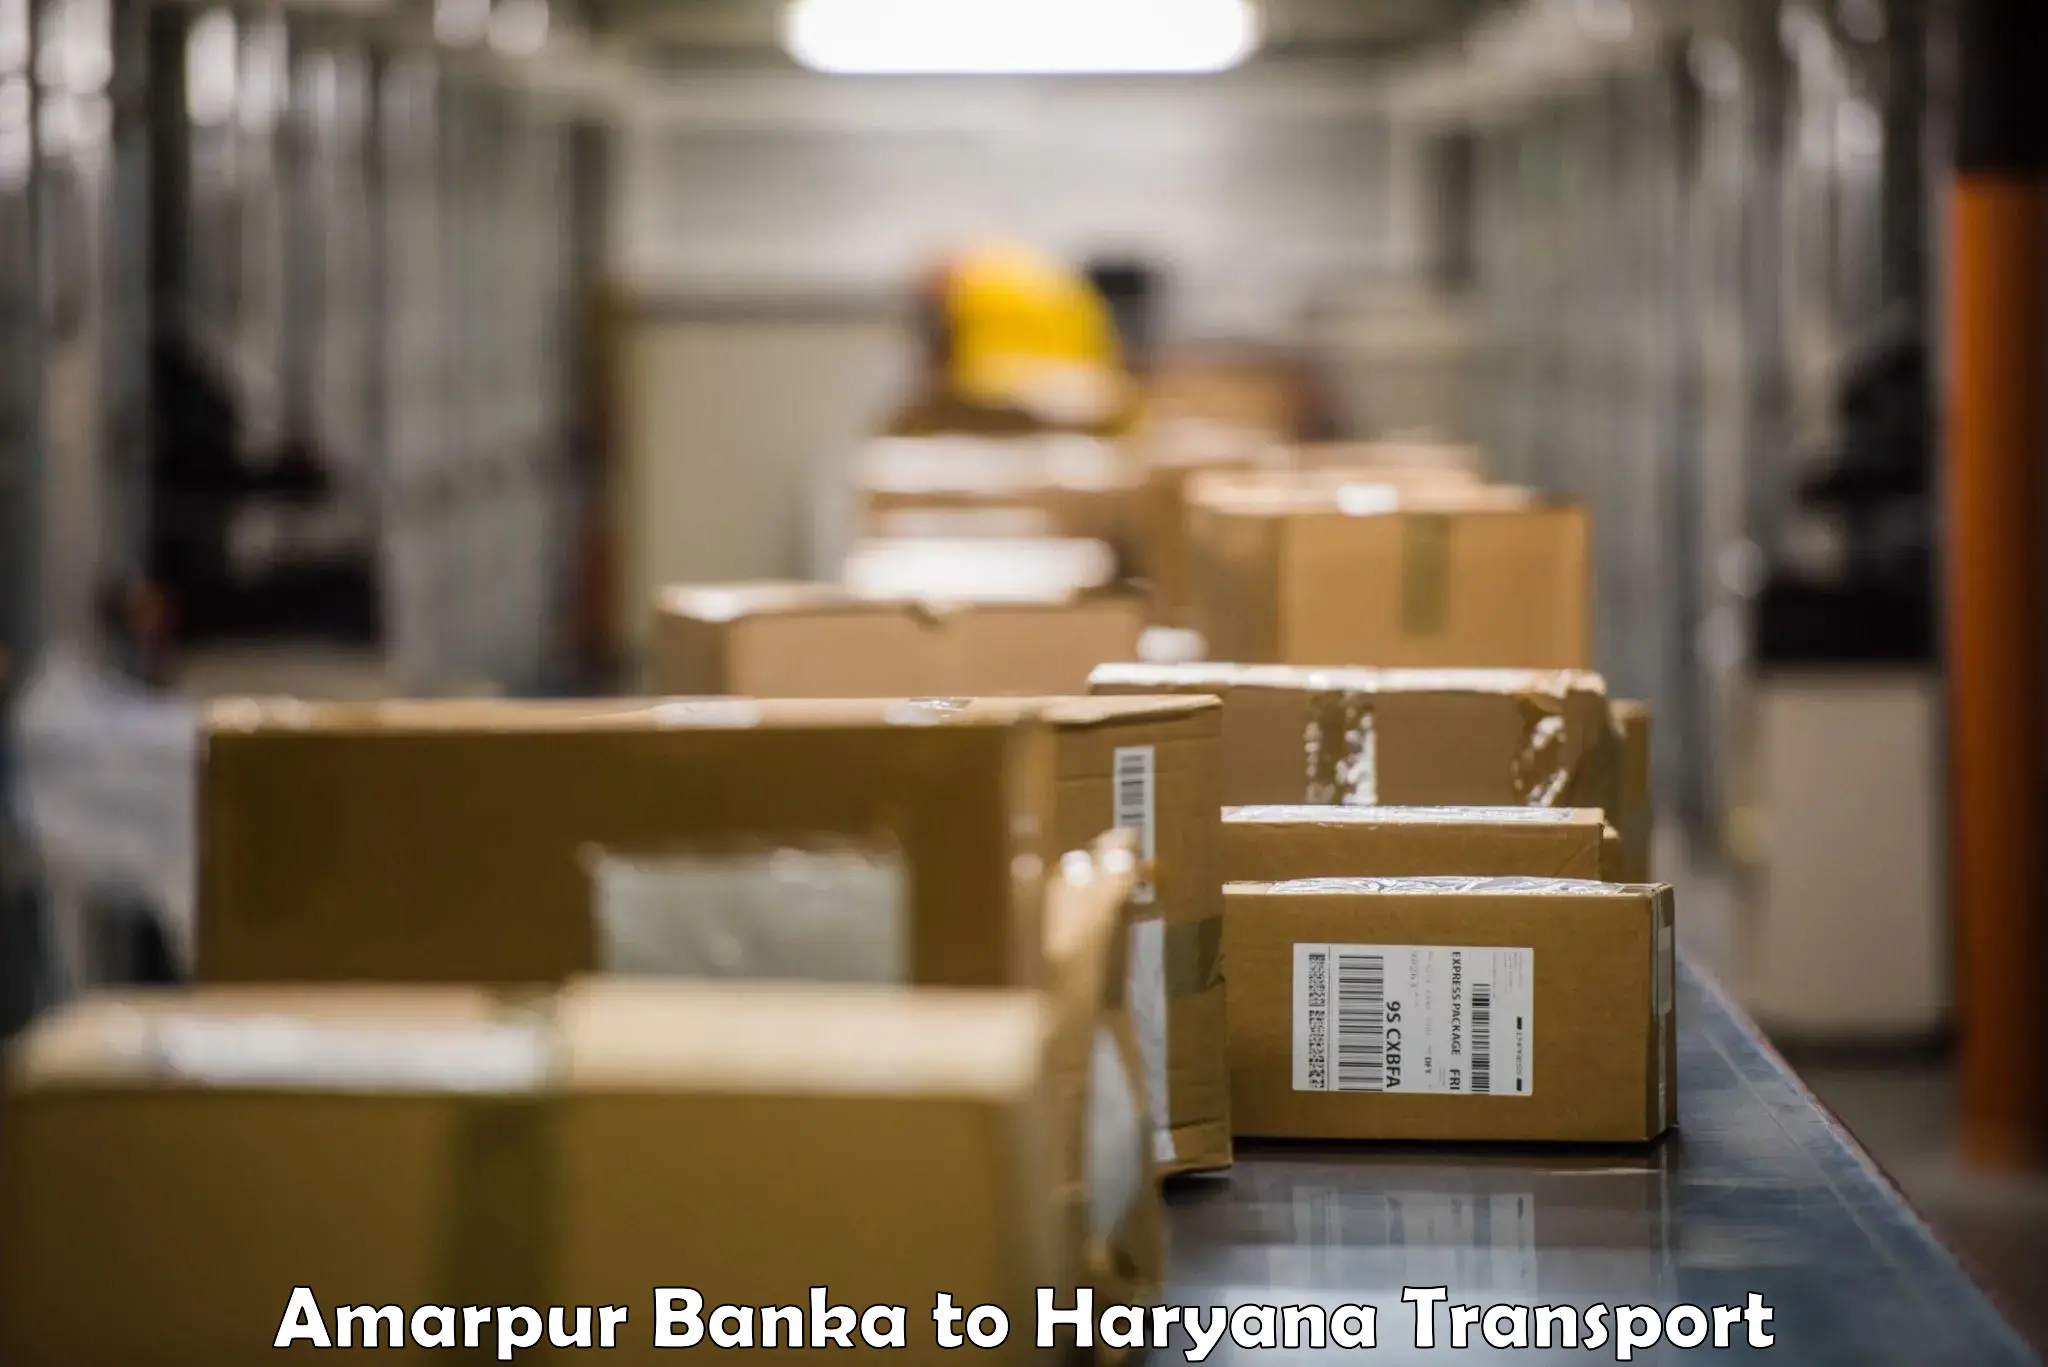 Nearest transport service Amarpur Banka to IIIT Sonepat